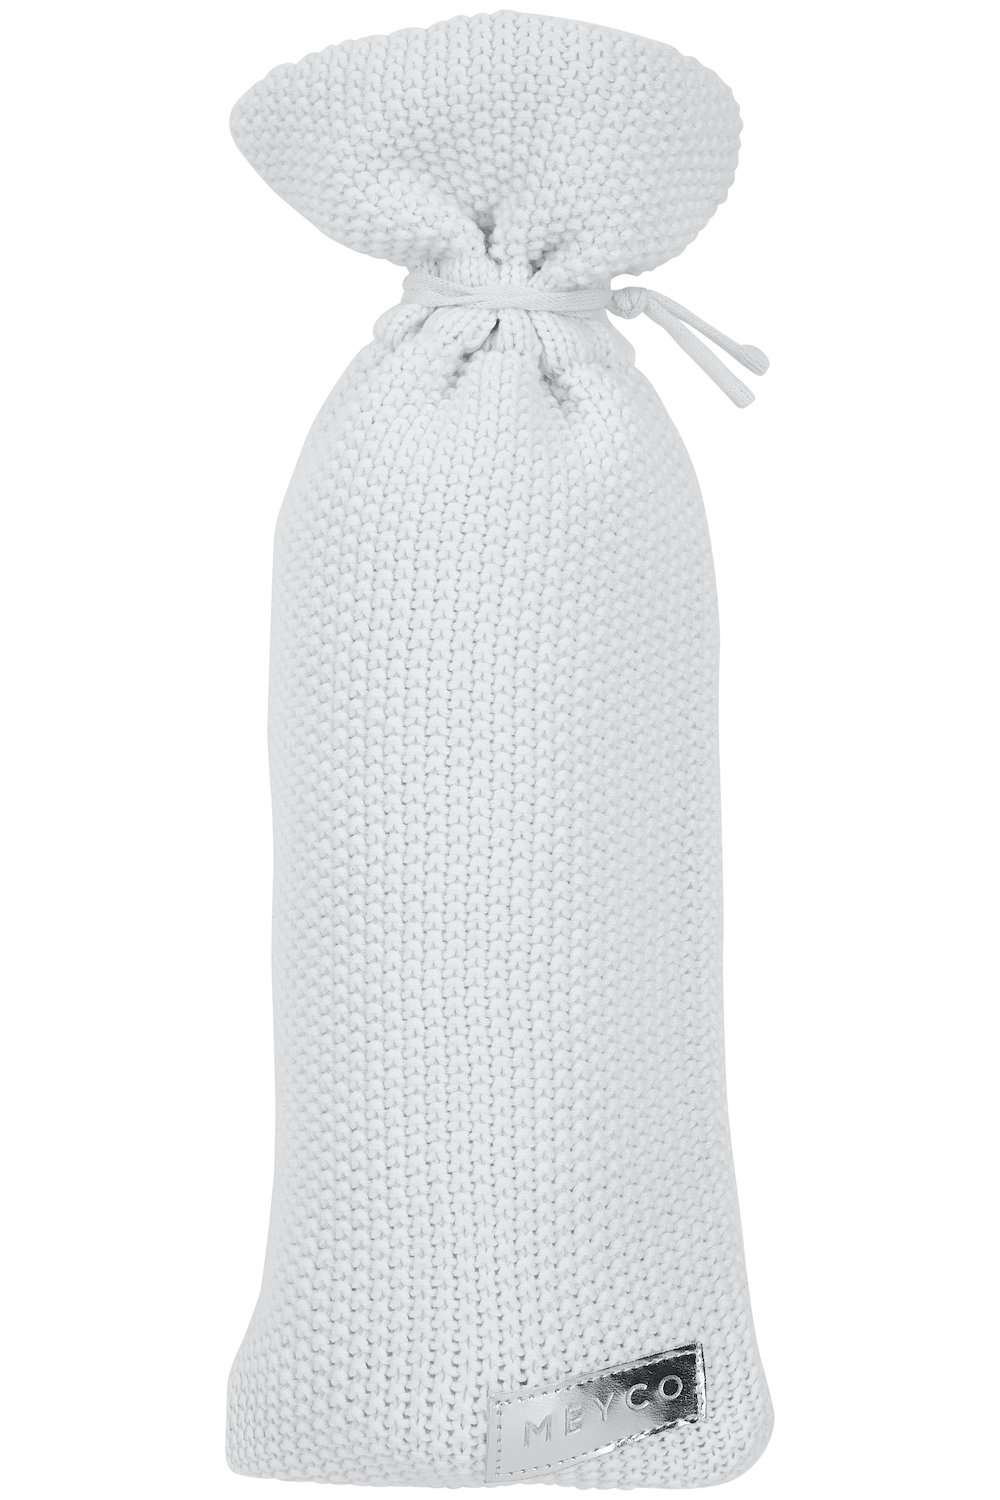 Biologische Wärmflaschenbezug Mini Relief - Warm Weiß - 9xh35cm